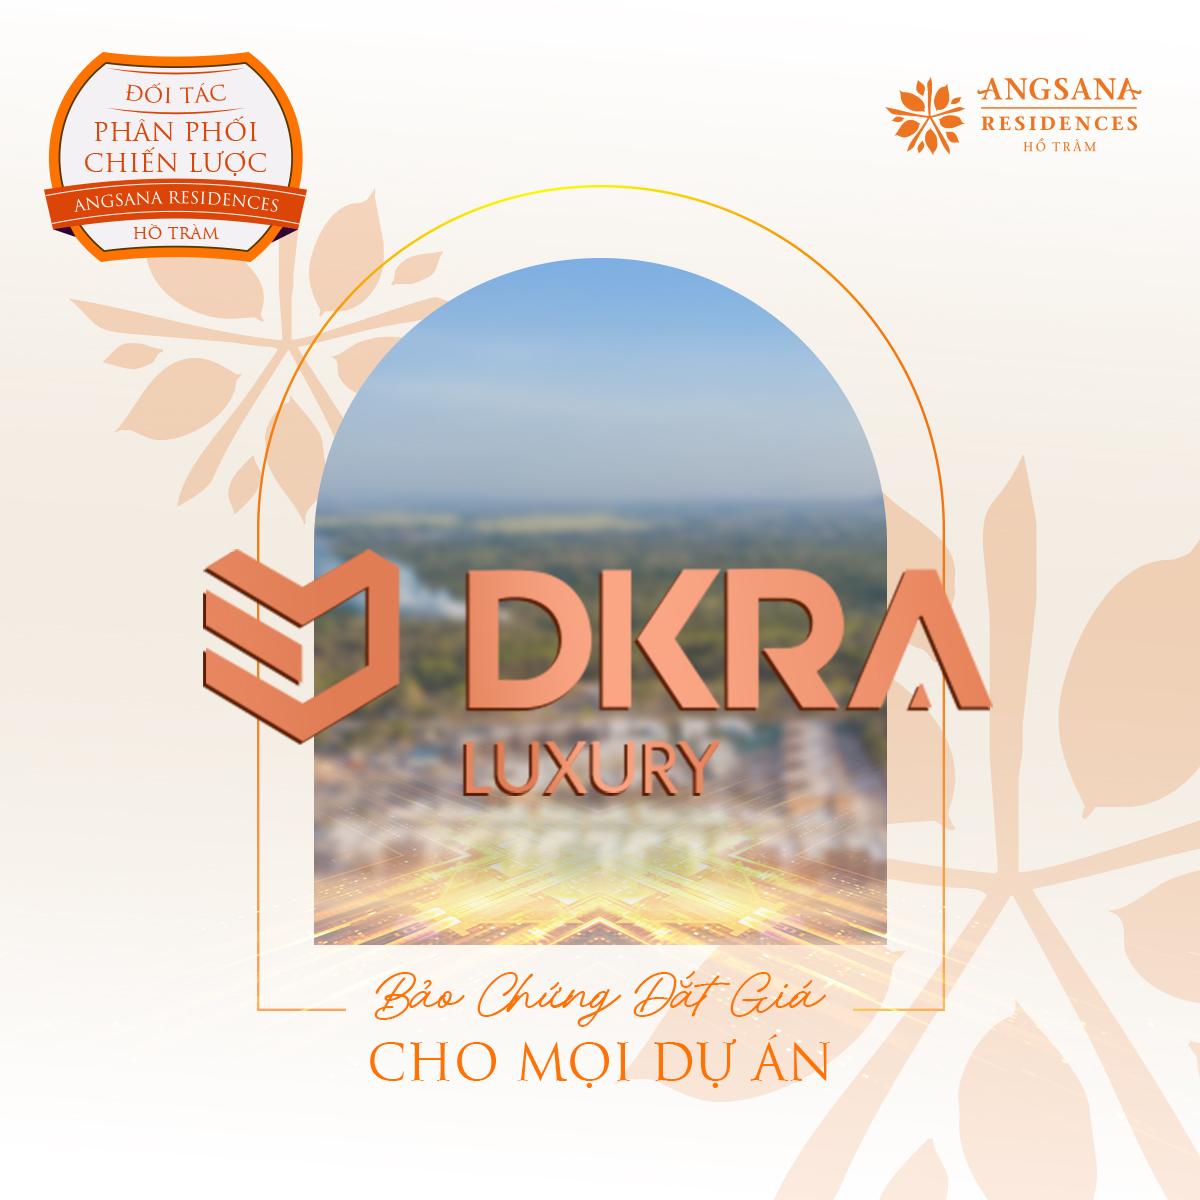 DKRA Luxury - Đối tác phân phối chiến lược Angsana Residences Hồ Tràm